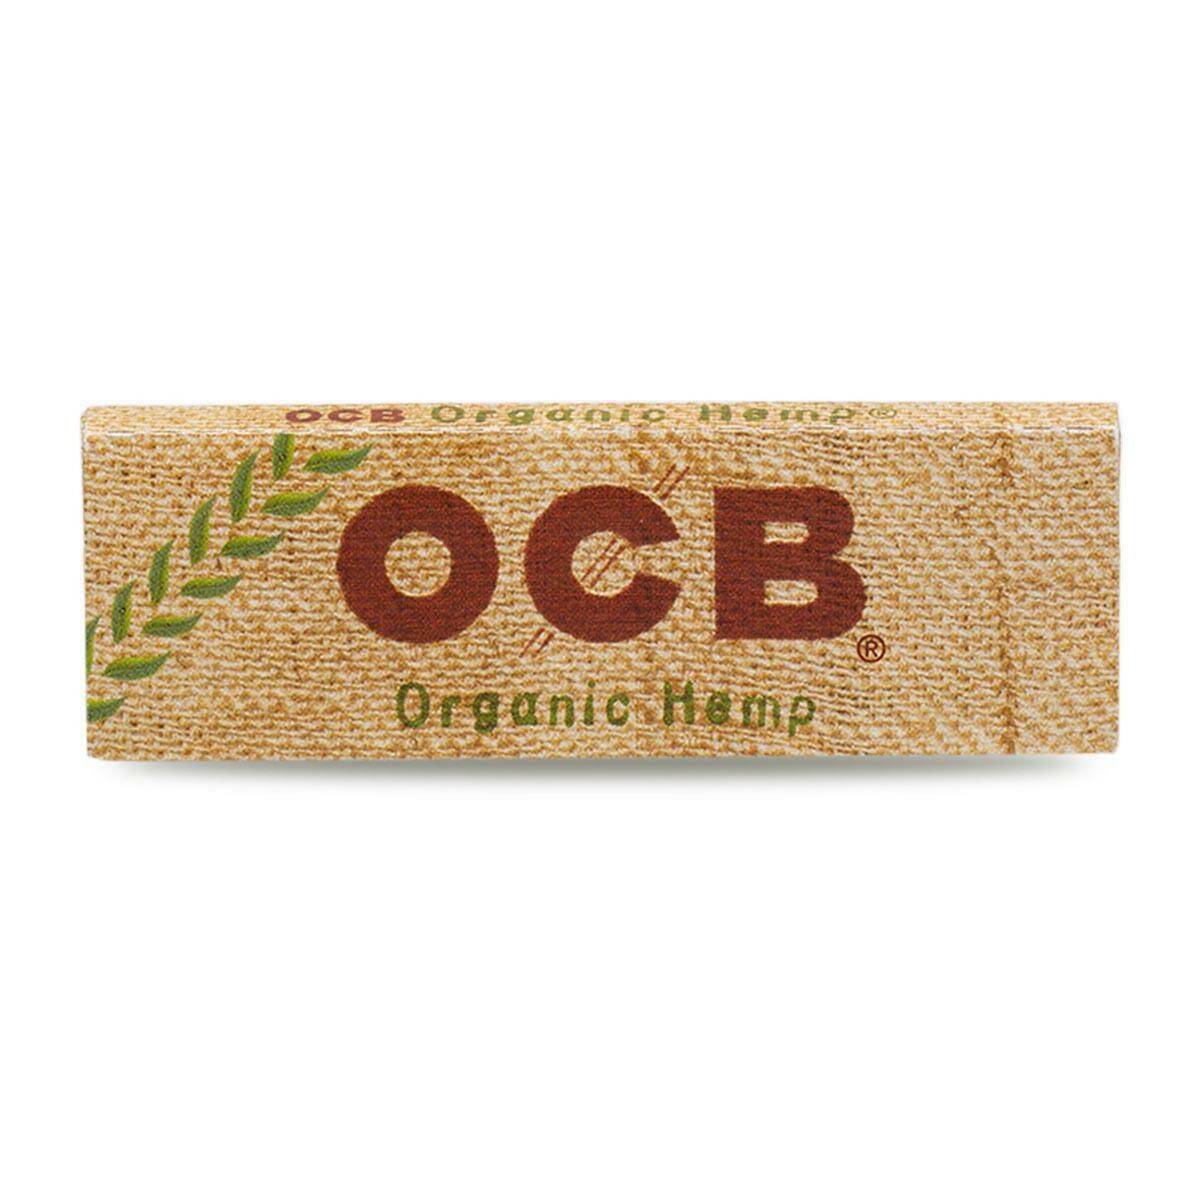 OCB Organic